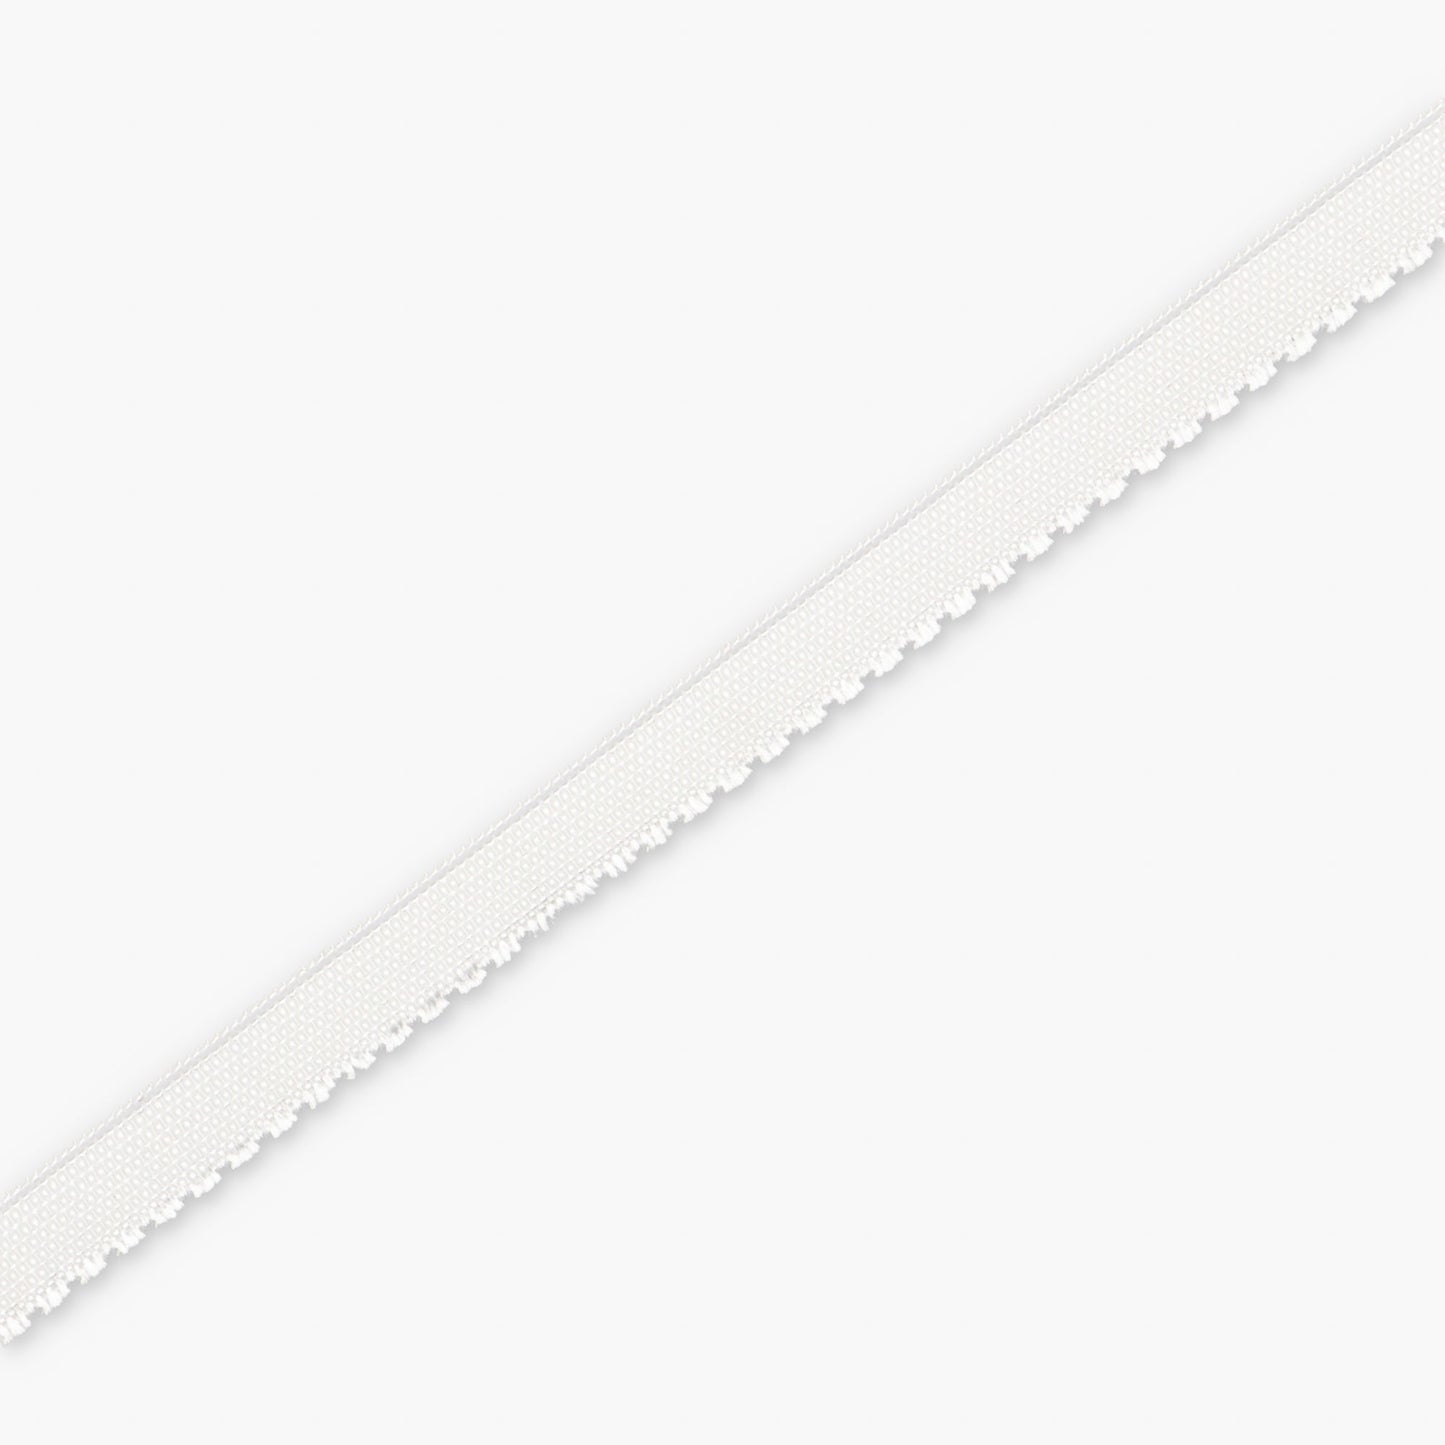 Non-slip Elastic White 10mm (15m)